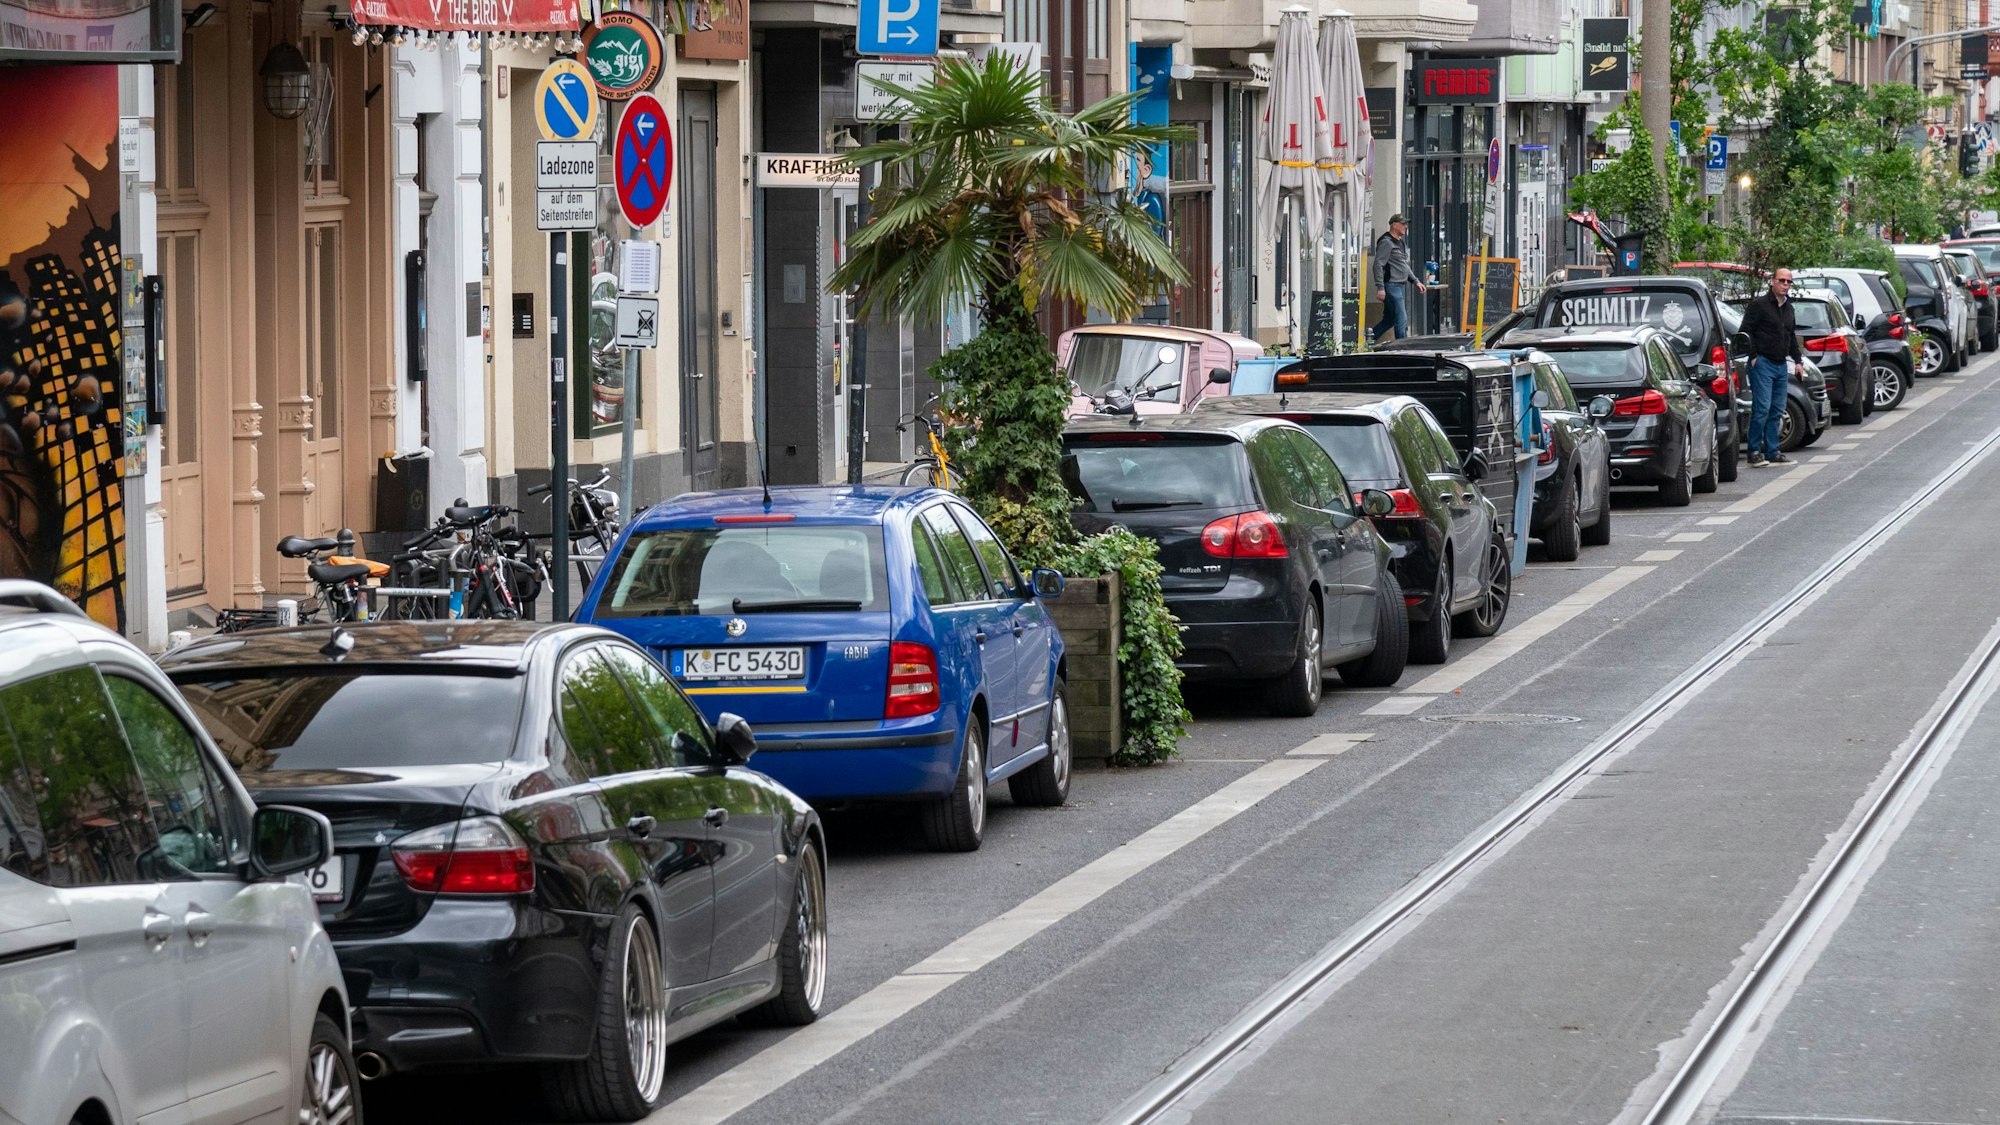 Aachener Straße in Köln mit geparkten Autos und Straßenbahnschienen